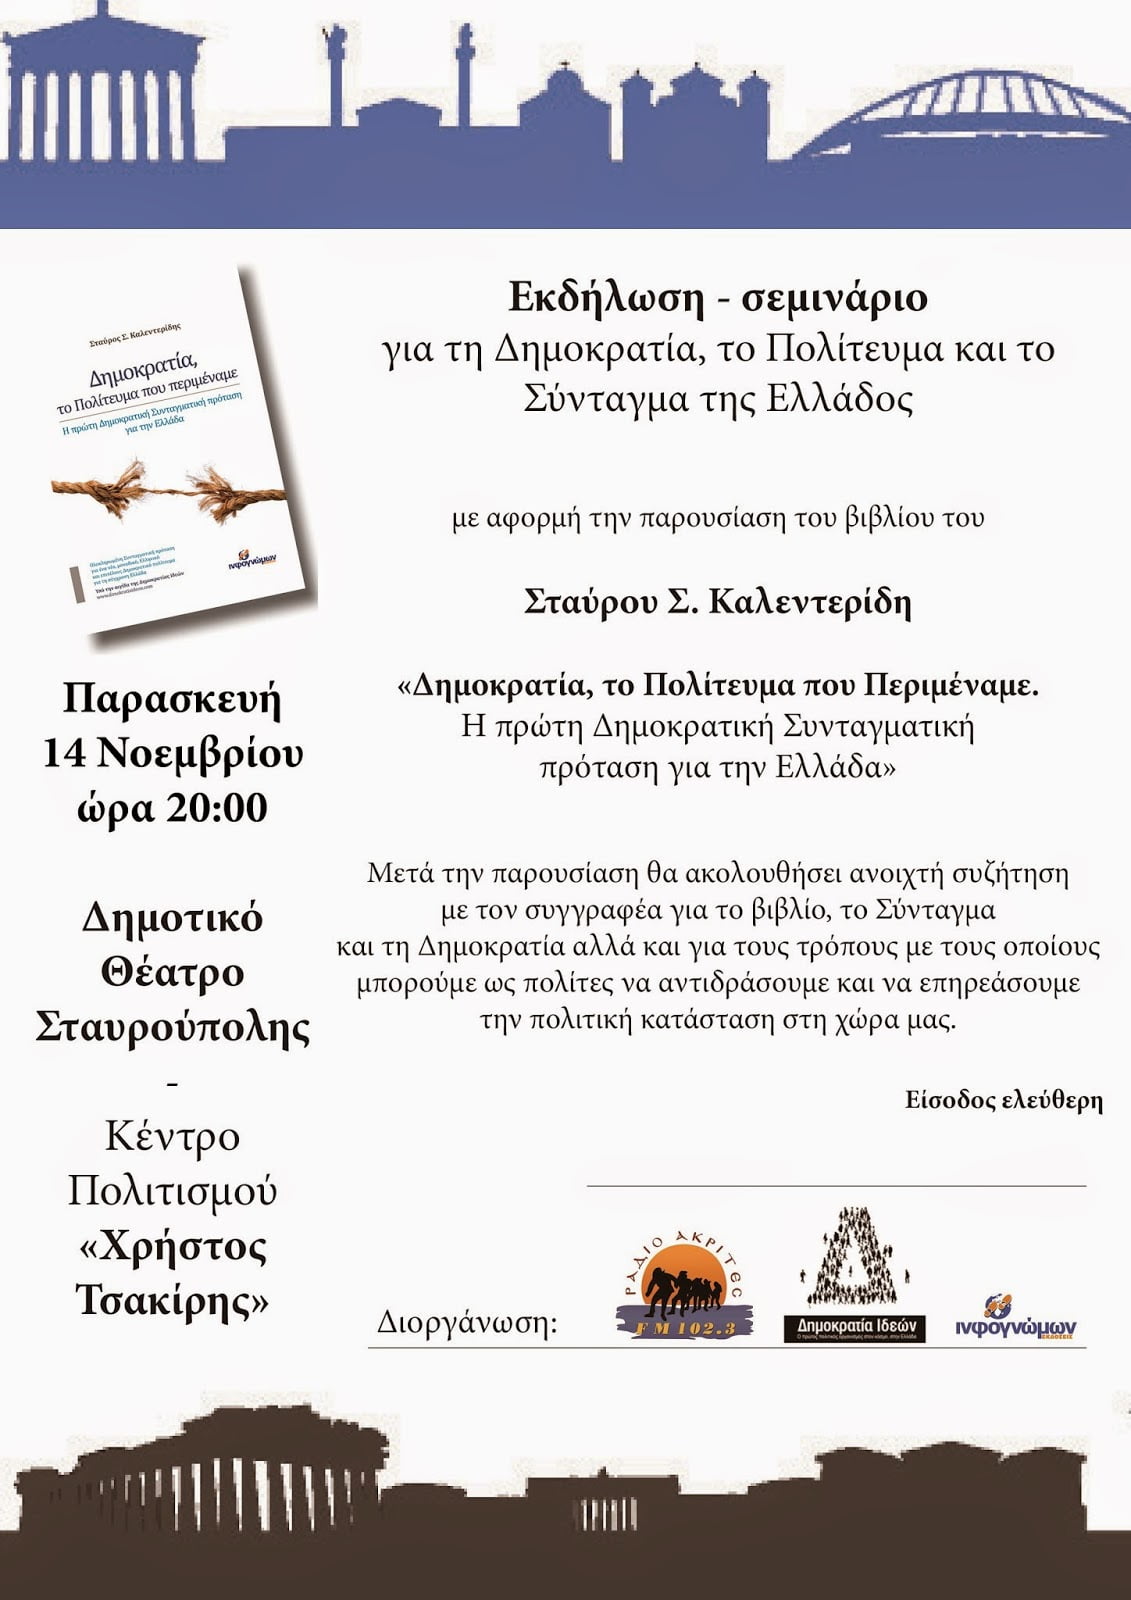 Εκδήλωση-σεμινάριο του Σταύρου Σ. Καλεντερίδη για τη Δημοκρατία, το Πολίτευμα και το Σύνταγμα της Ελλάδος